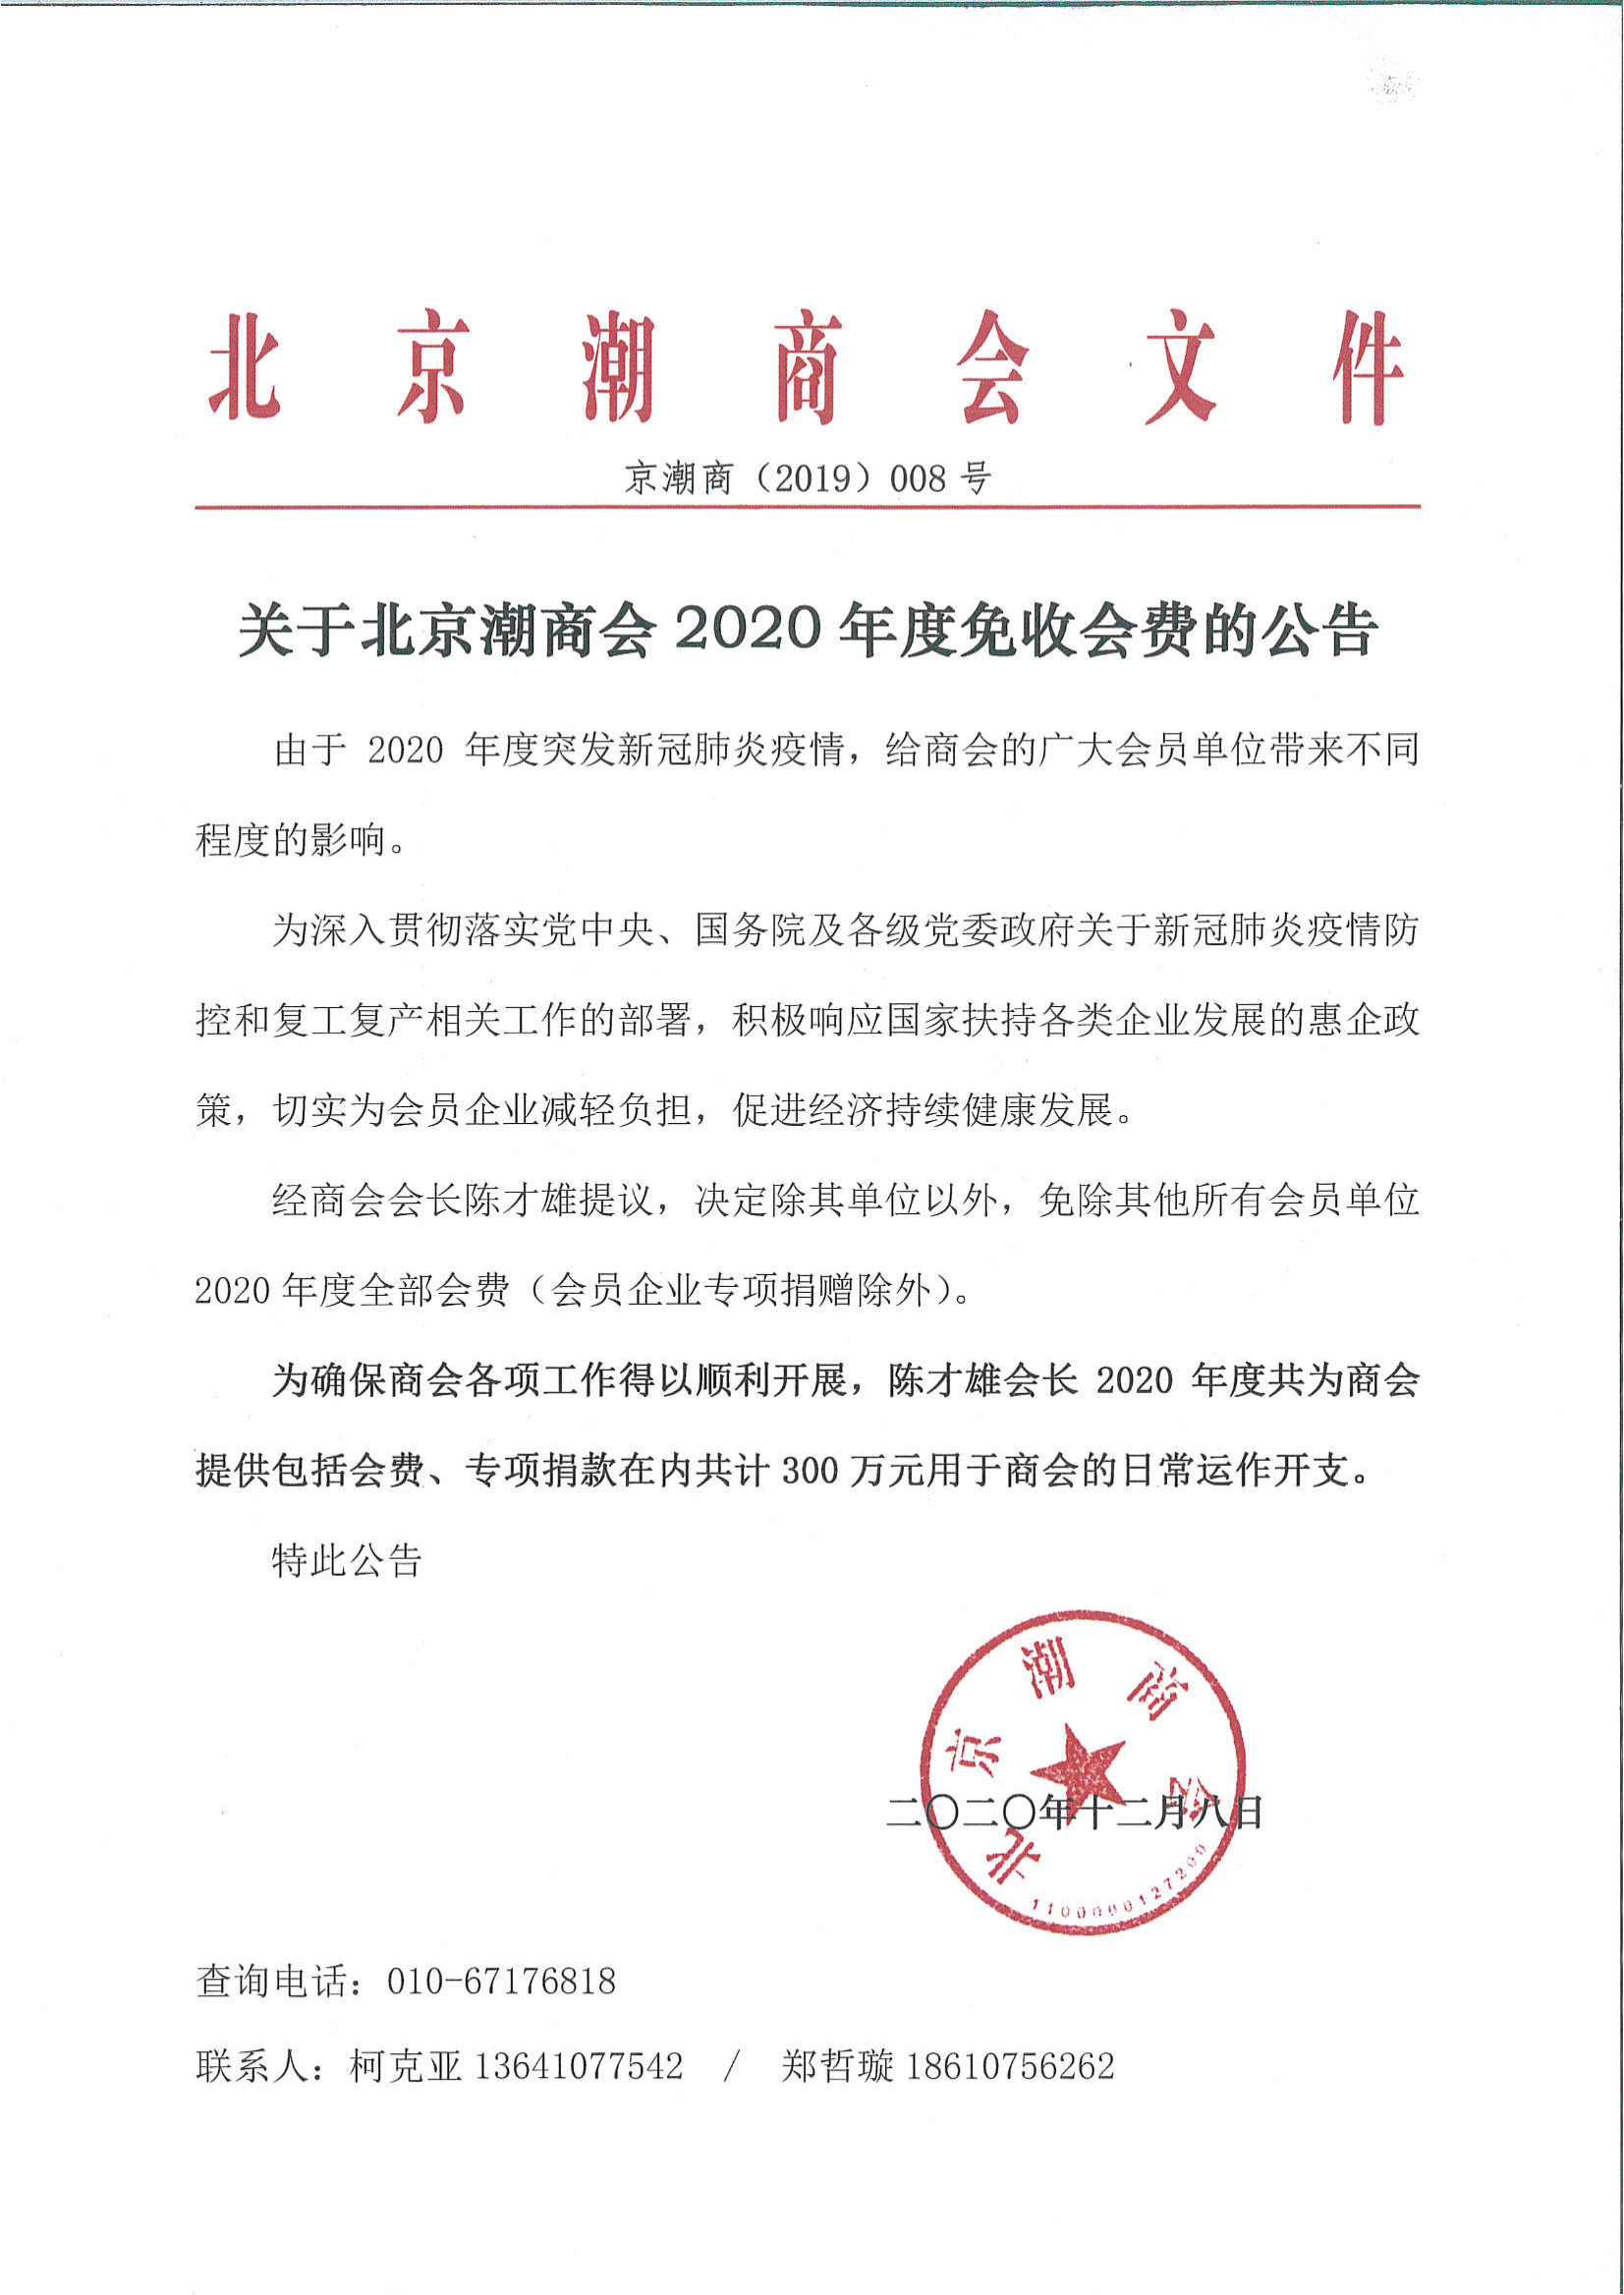 关于北京潮商会2020年度免收会费的公告